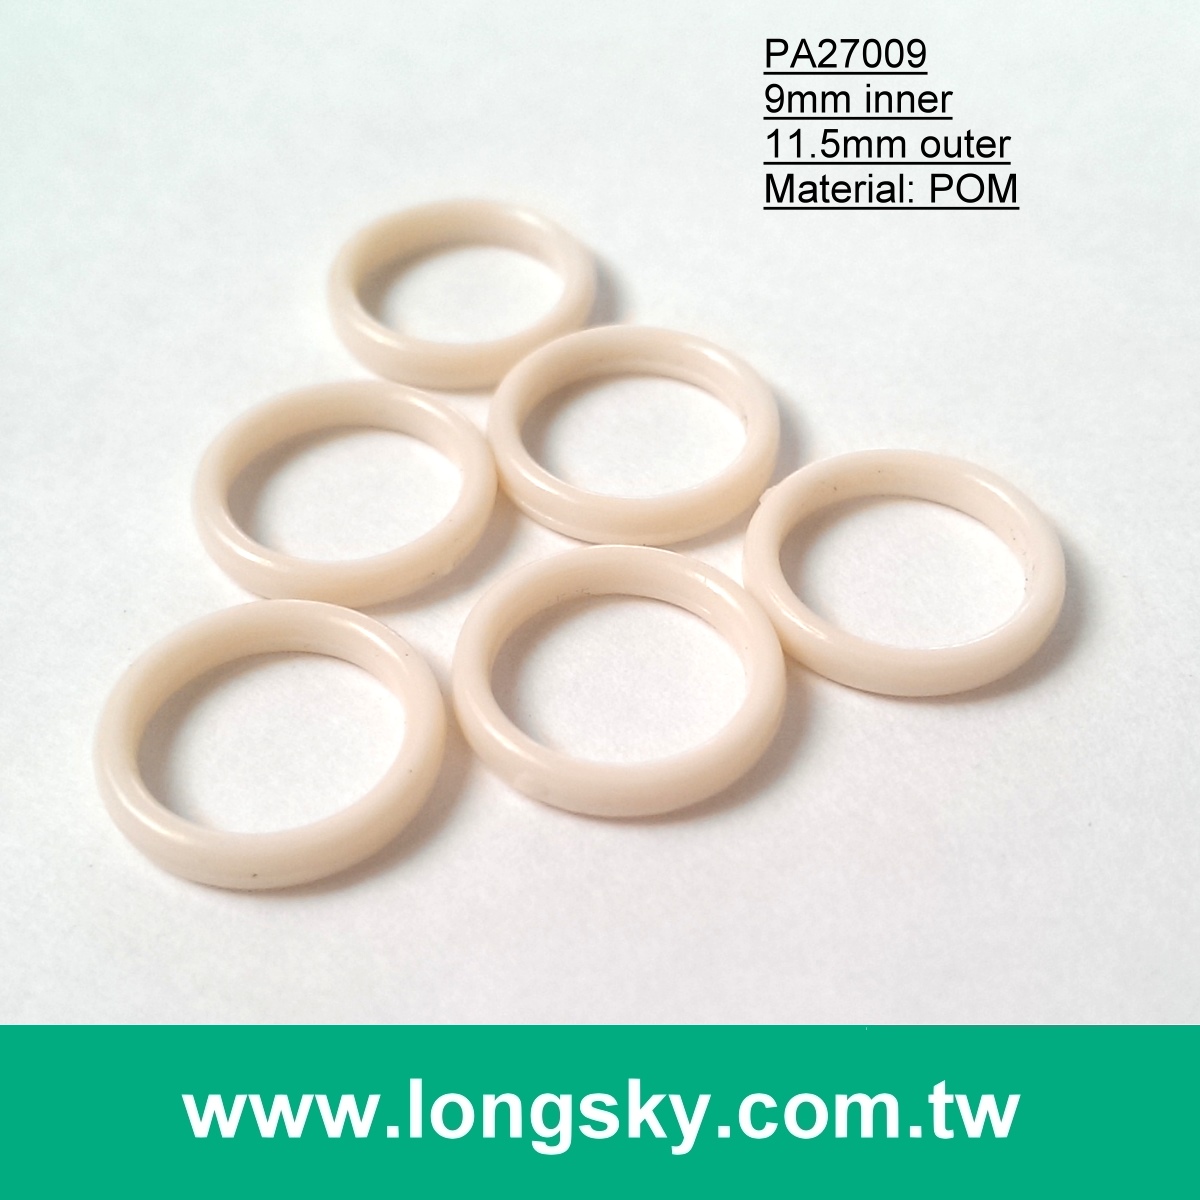 (#PA27009/9mm inner) plastic o-ring for women's lingerie bra